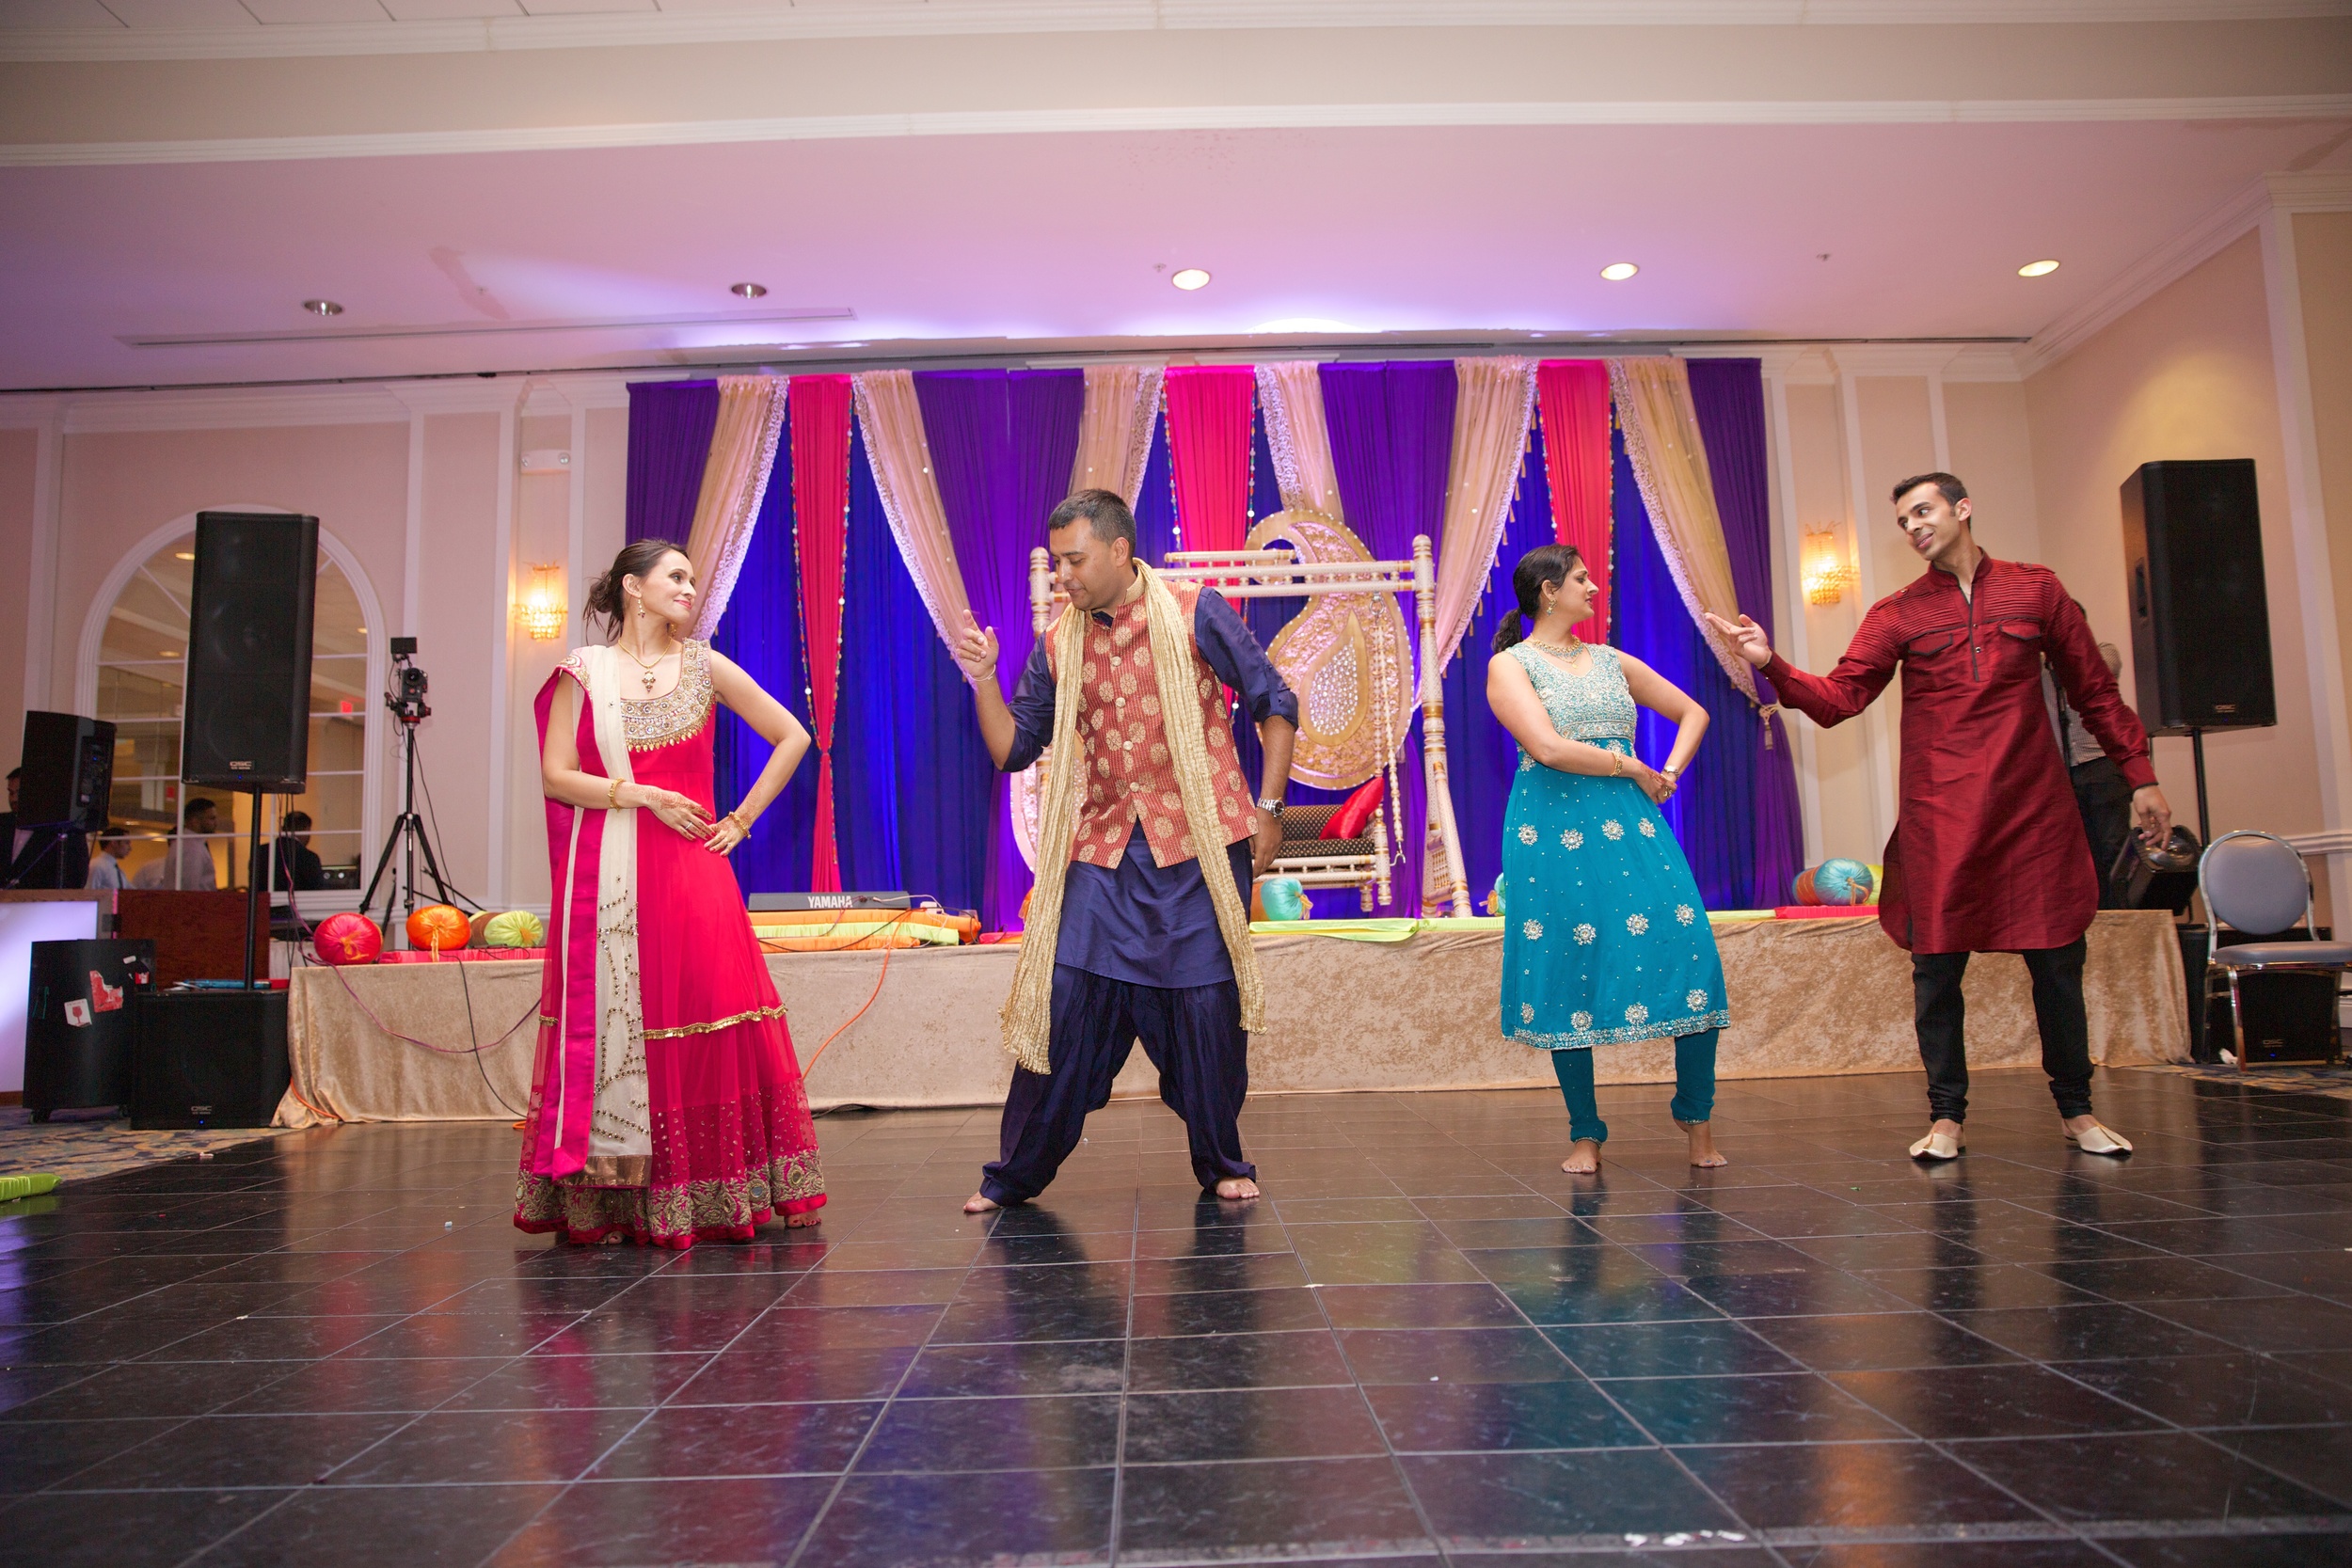 Le Cape Weddings - Reinnassance Convention Center in Schaumburg Weddings - Indian Wedding - Karthik and Megan 2152.jpg